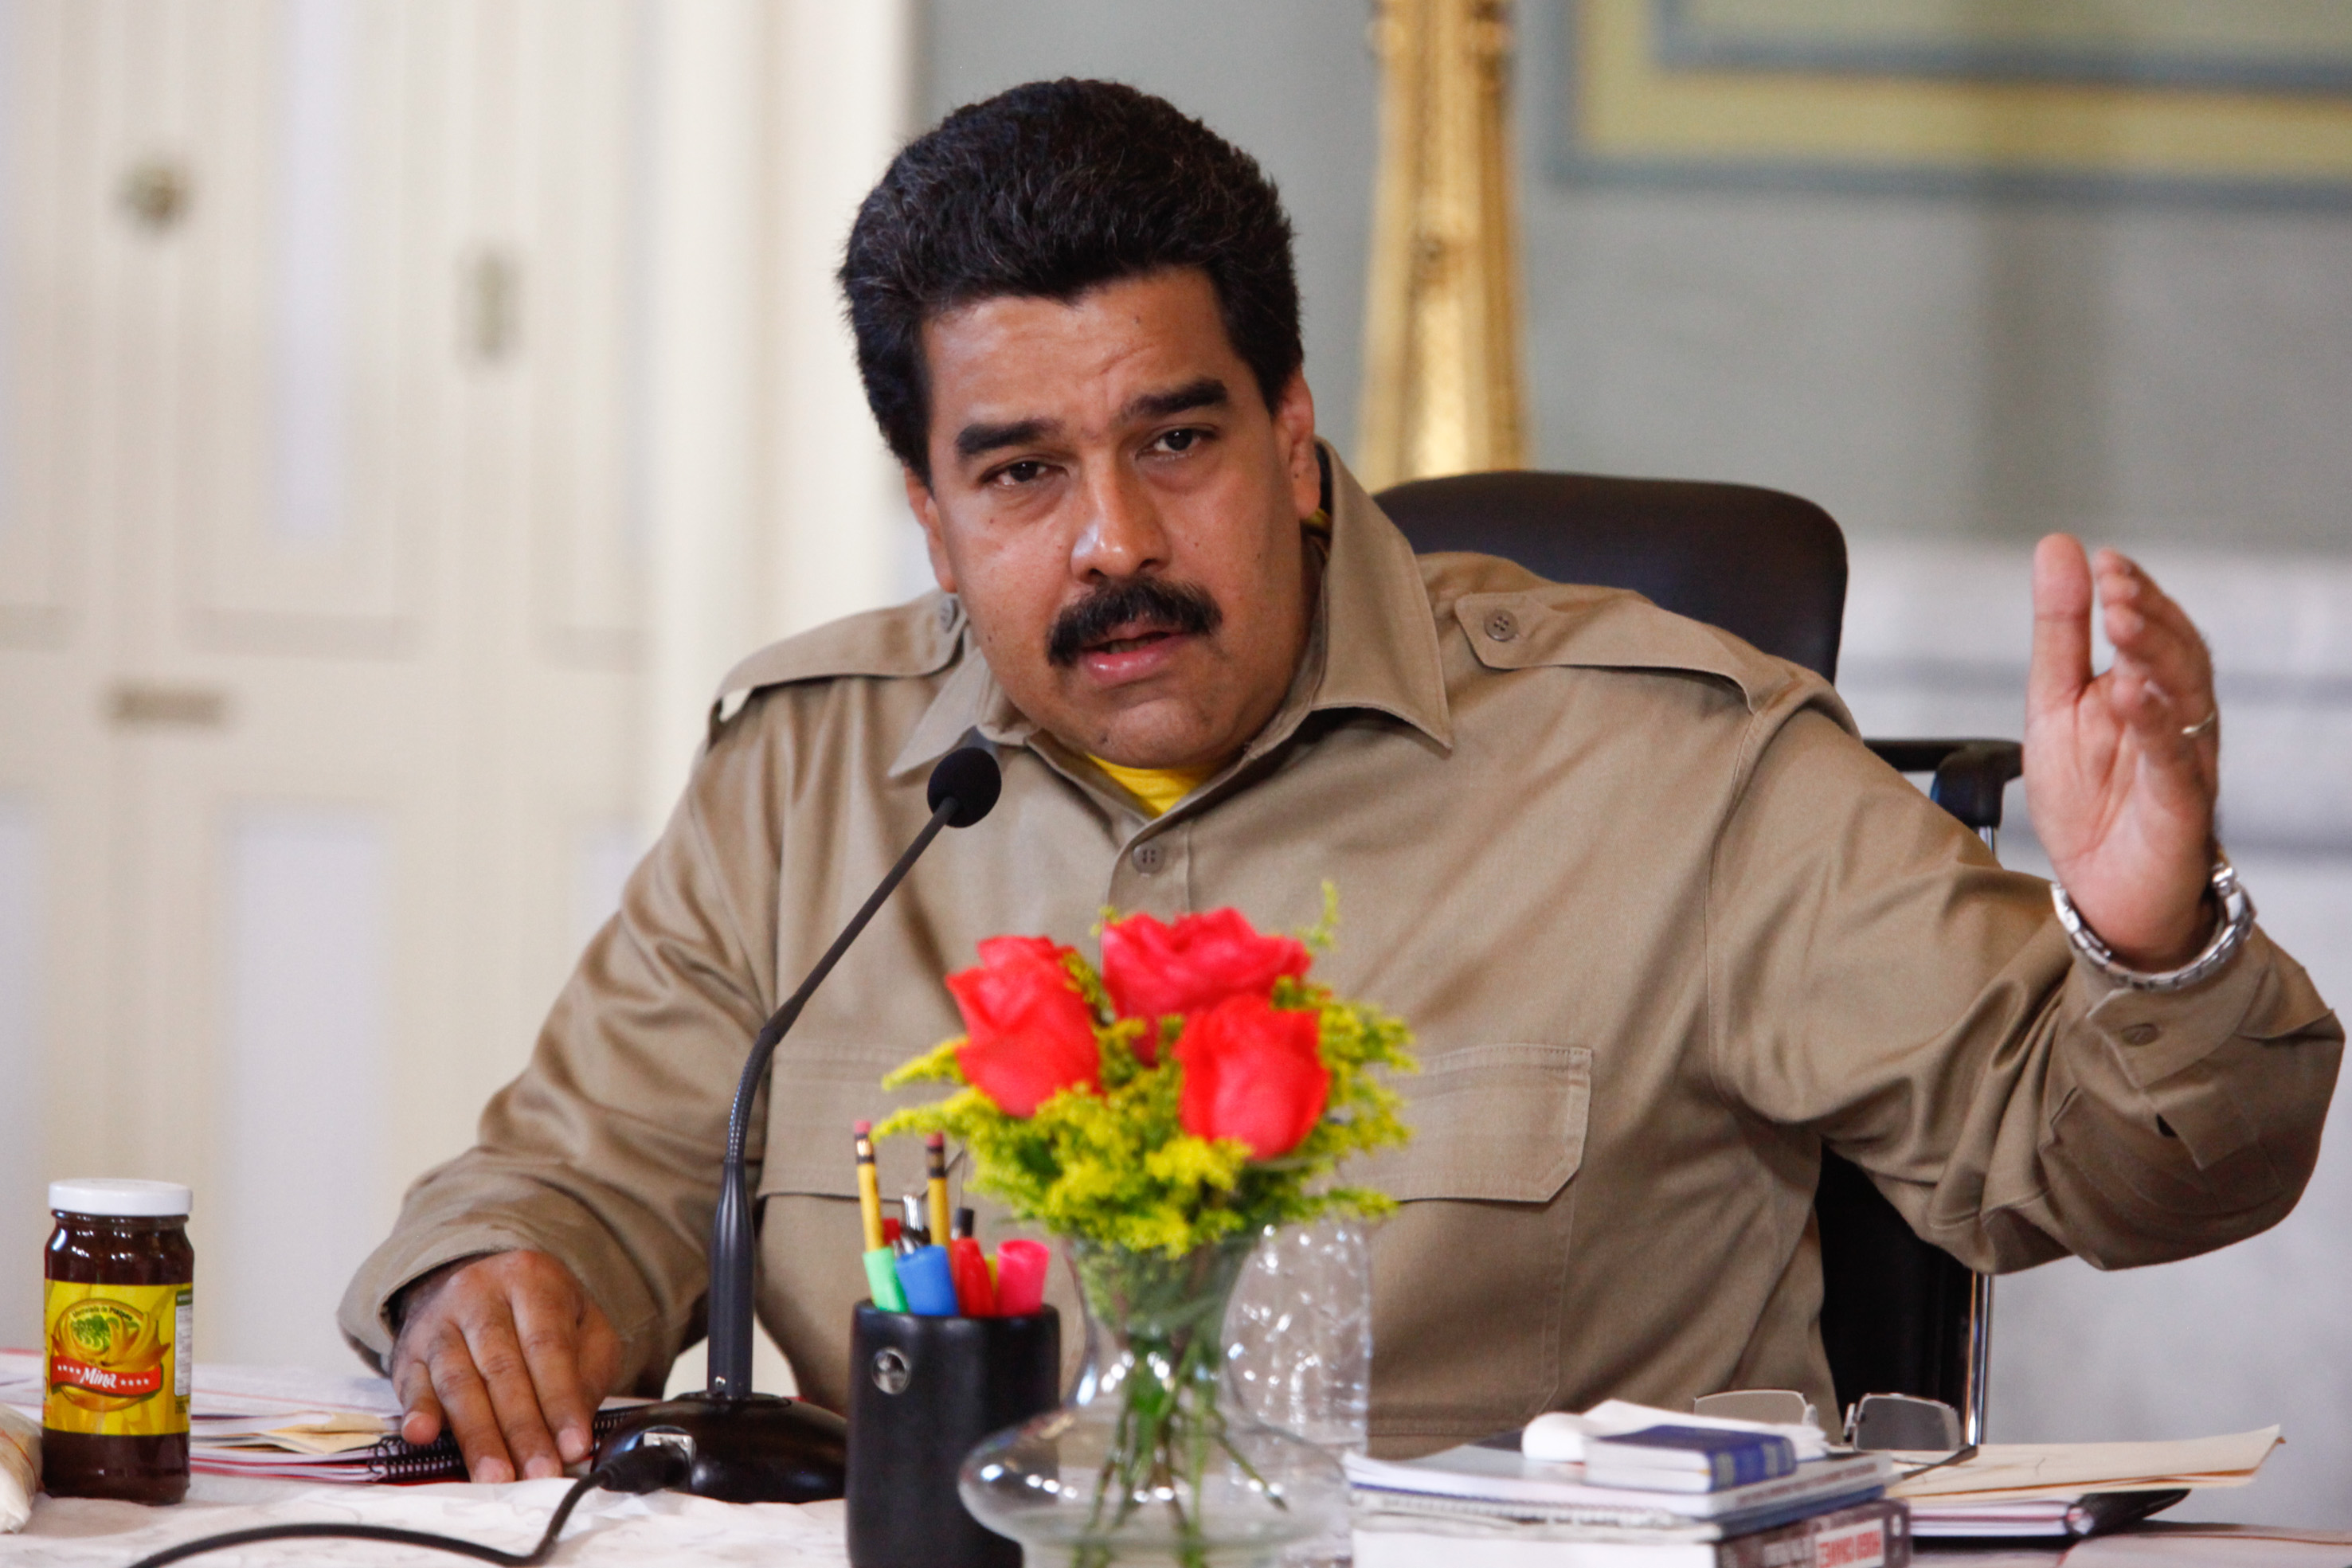 Los ataques psicológicos buscan desacreditar al mandatario venezolano Nicolás Maduro.